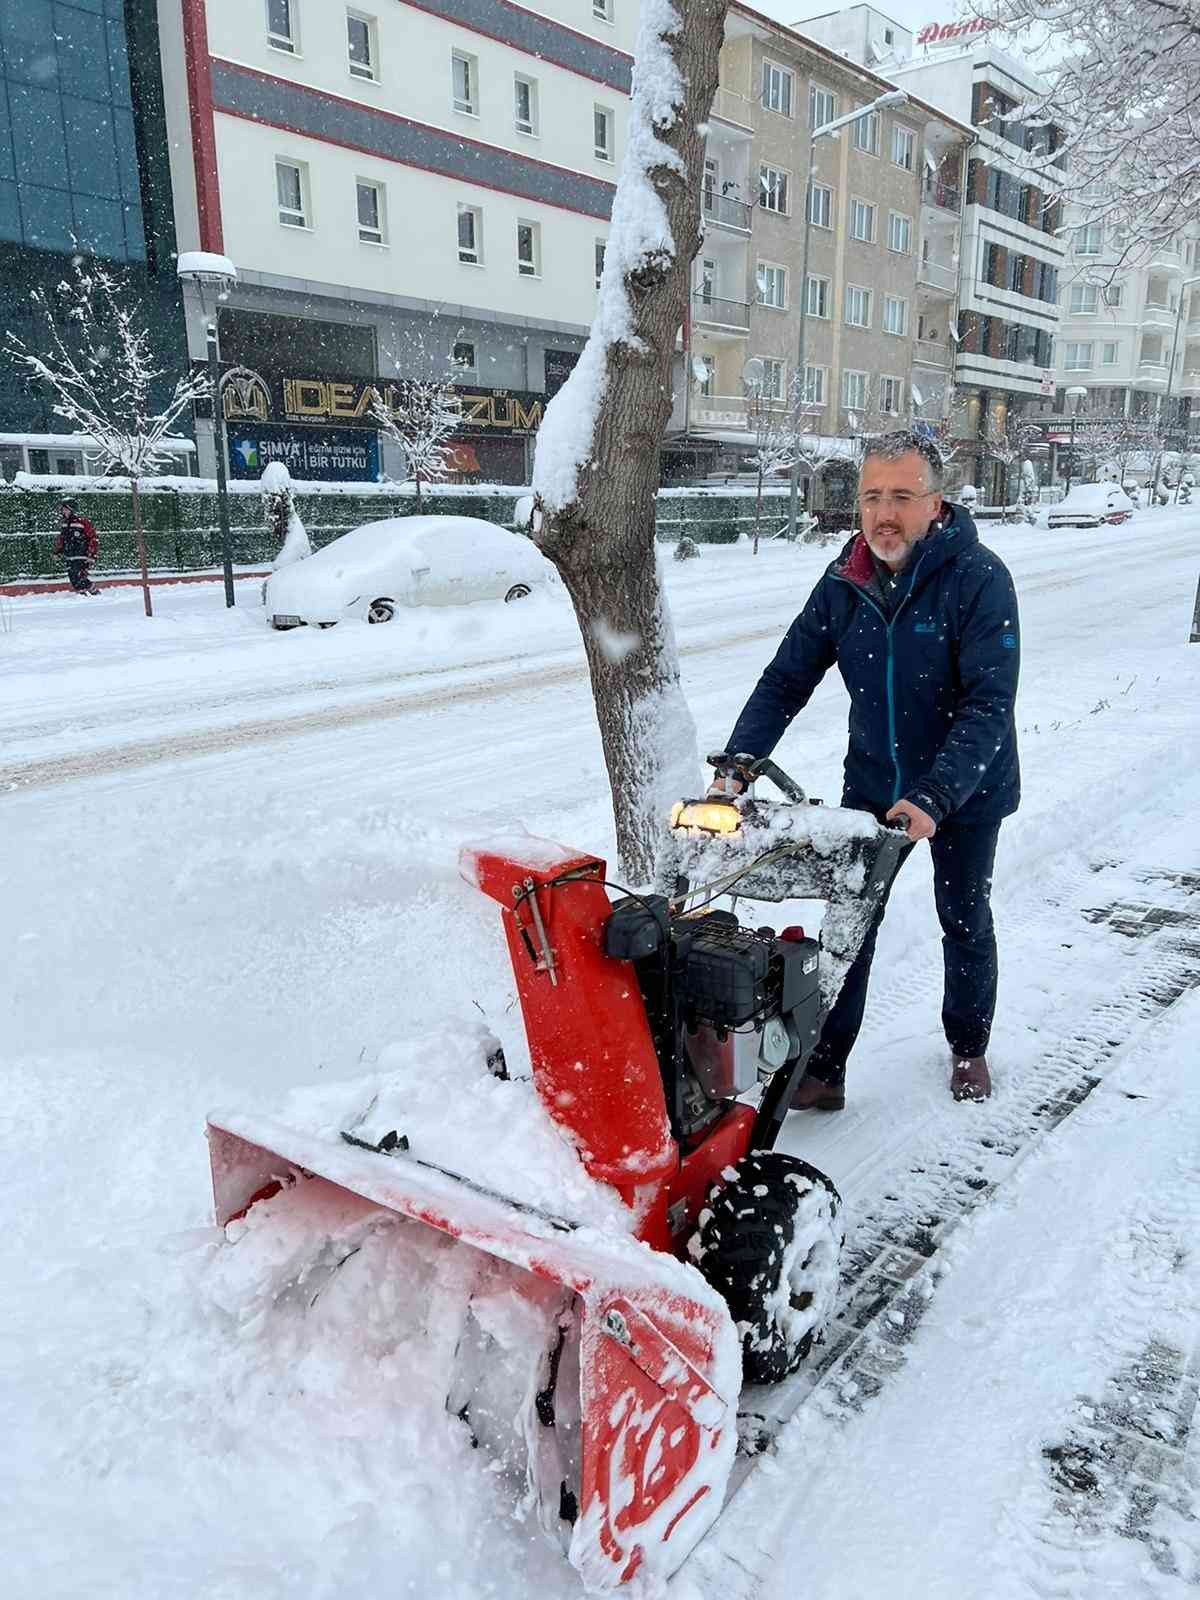 Nevşehir Belediyesi tüm ekipleri ile sahada çalışmalarını sürdürüyor